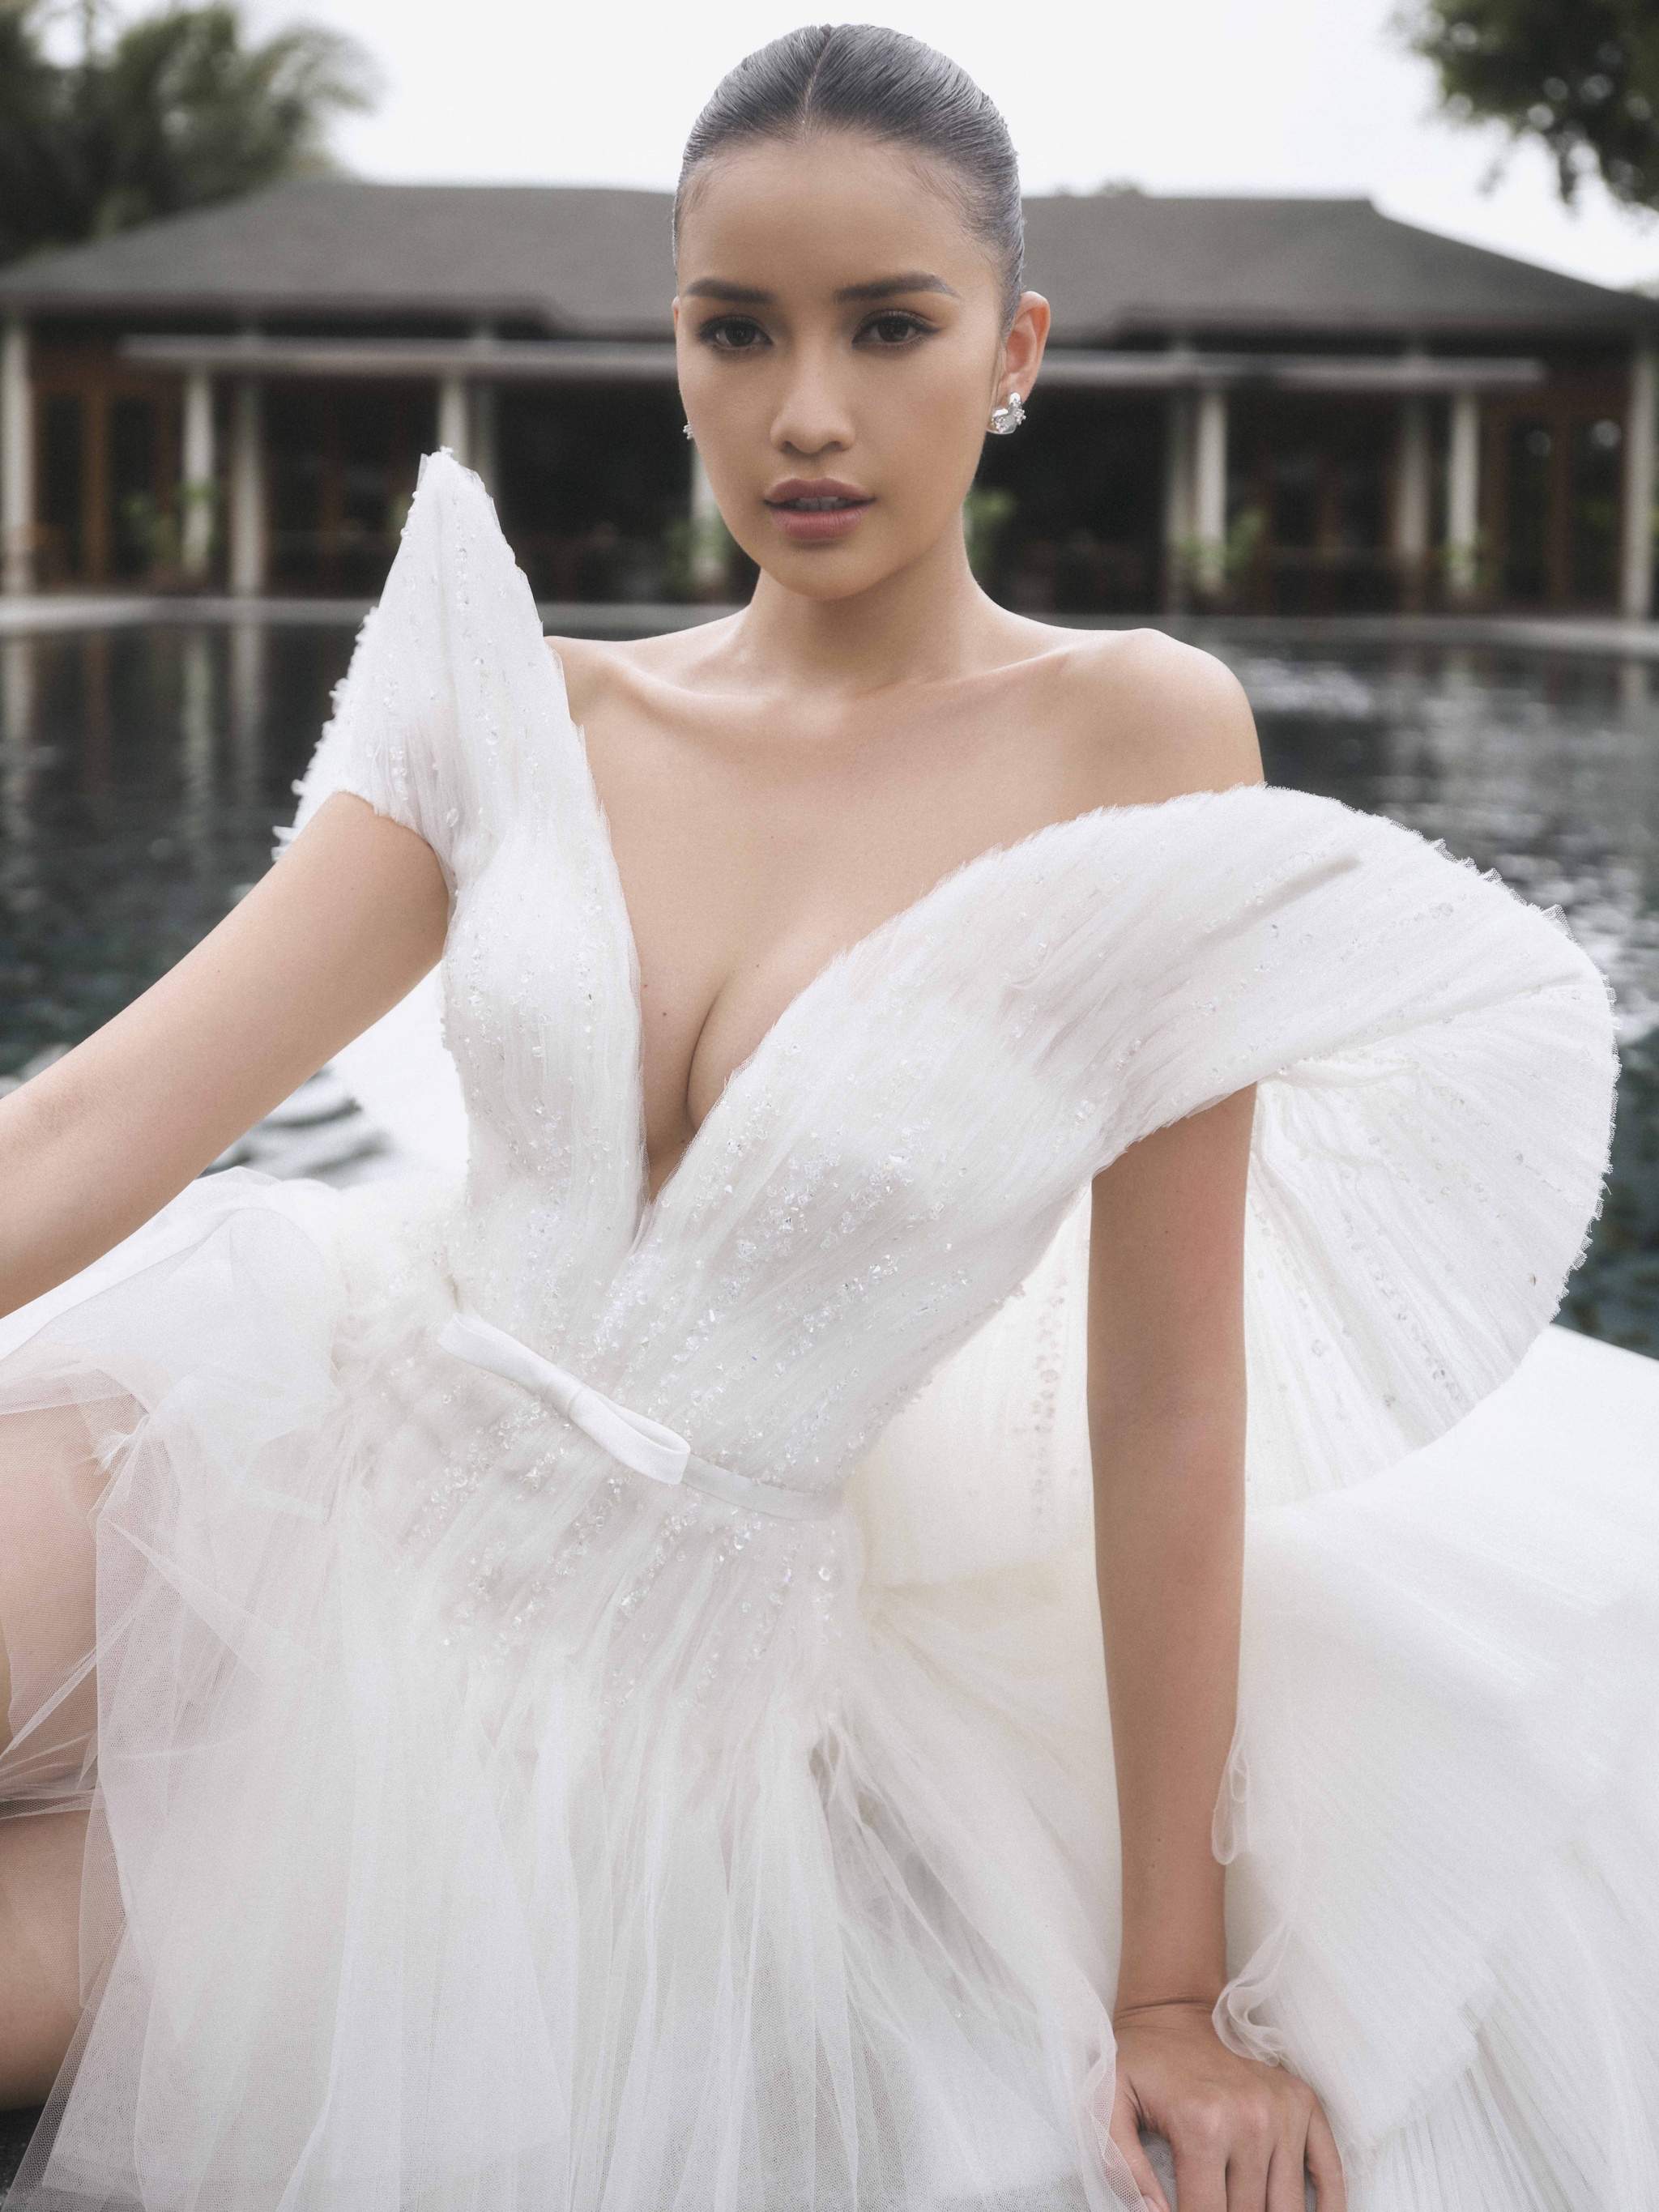 Hoa hậu Ngọc Châu quyến rũ khi mặc váy cưới - ảnh 4